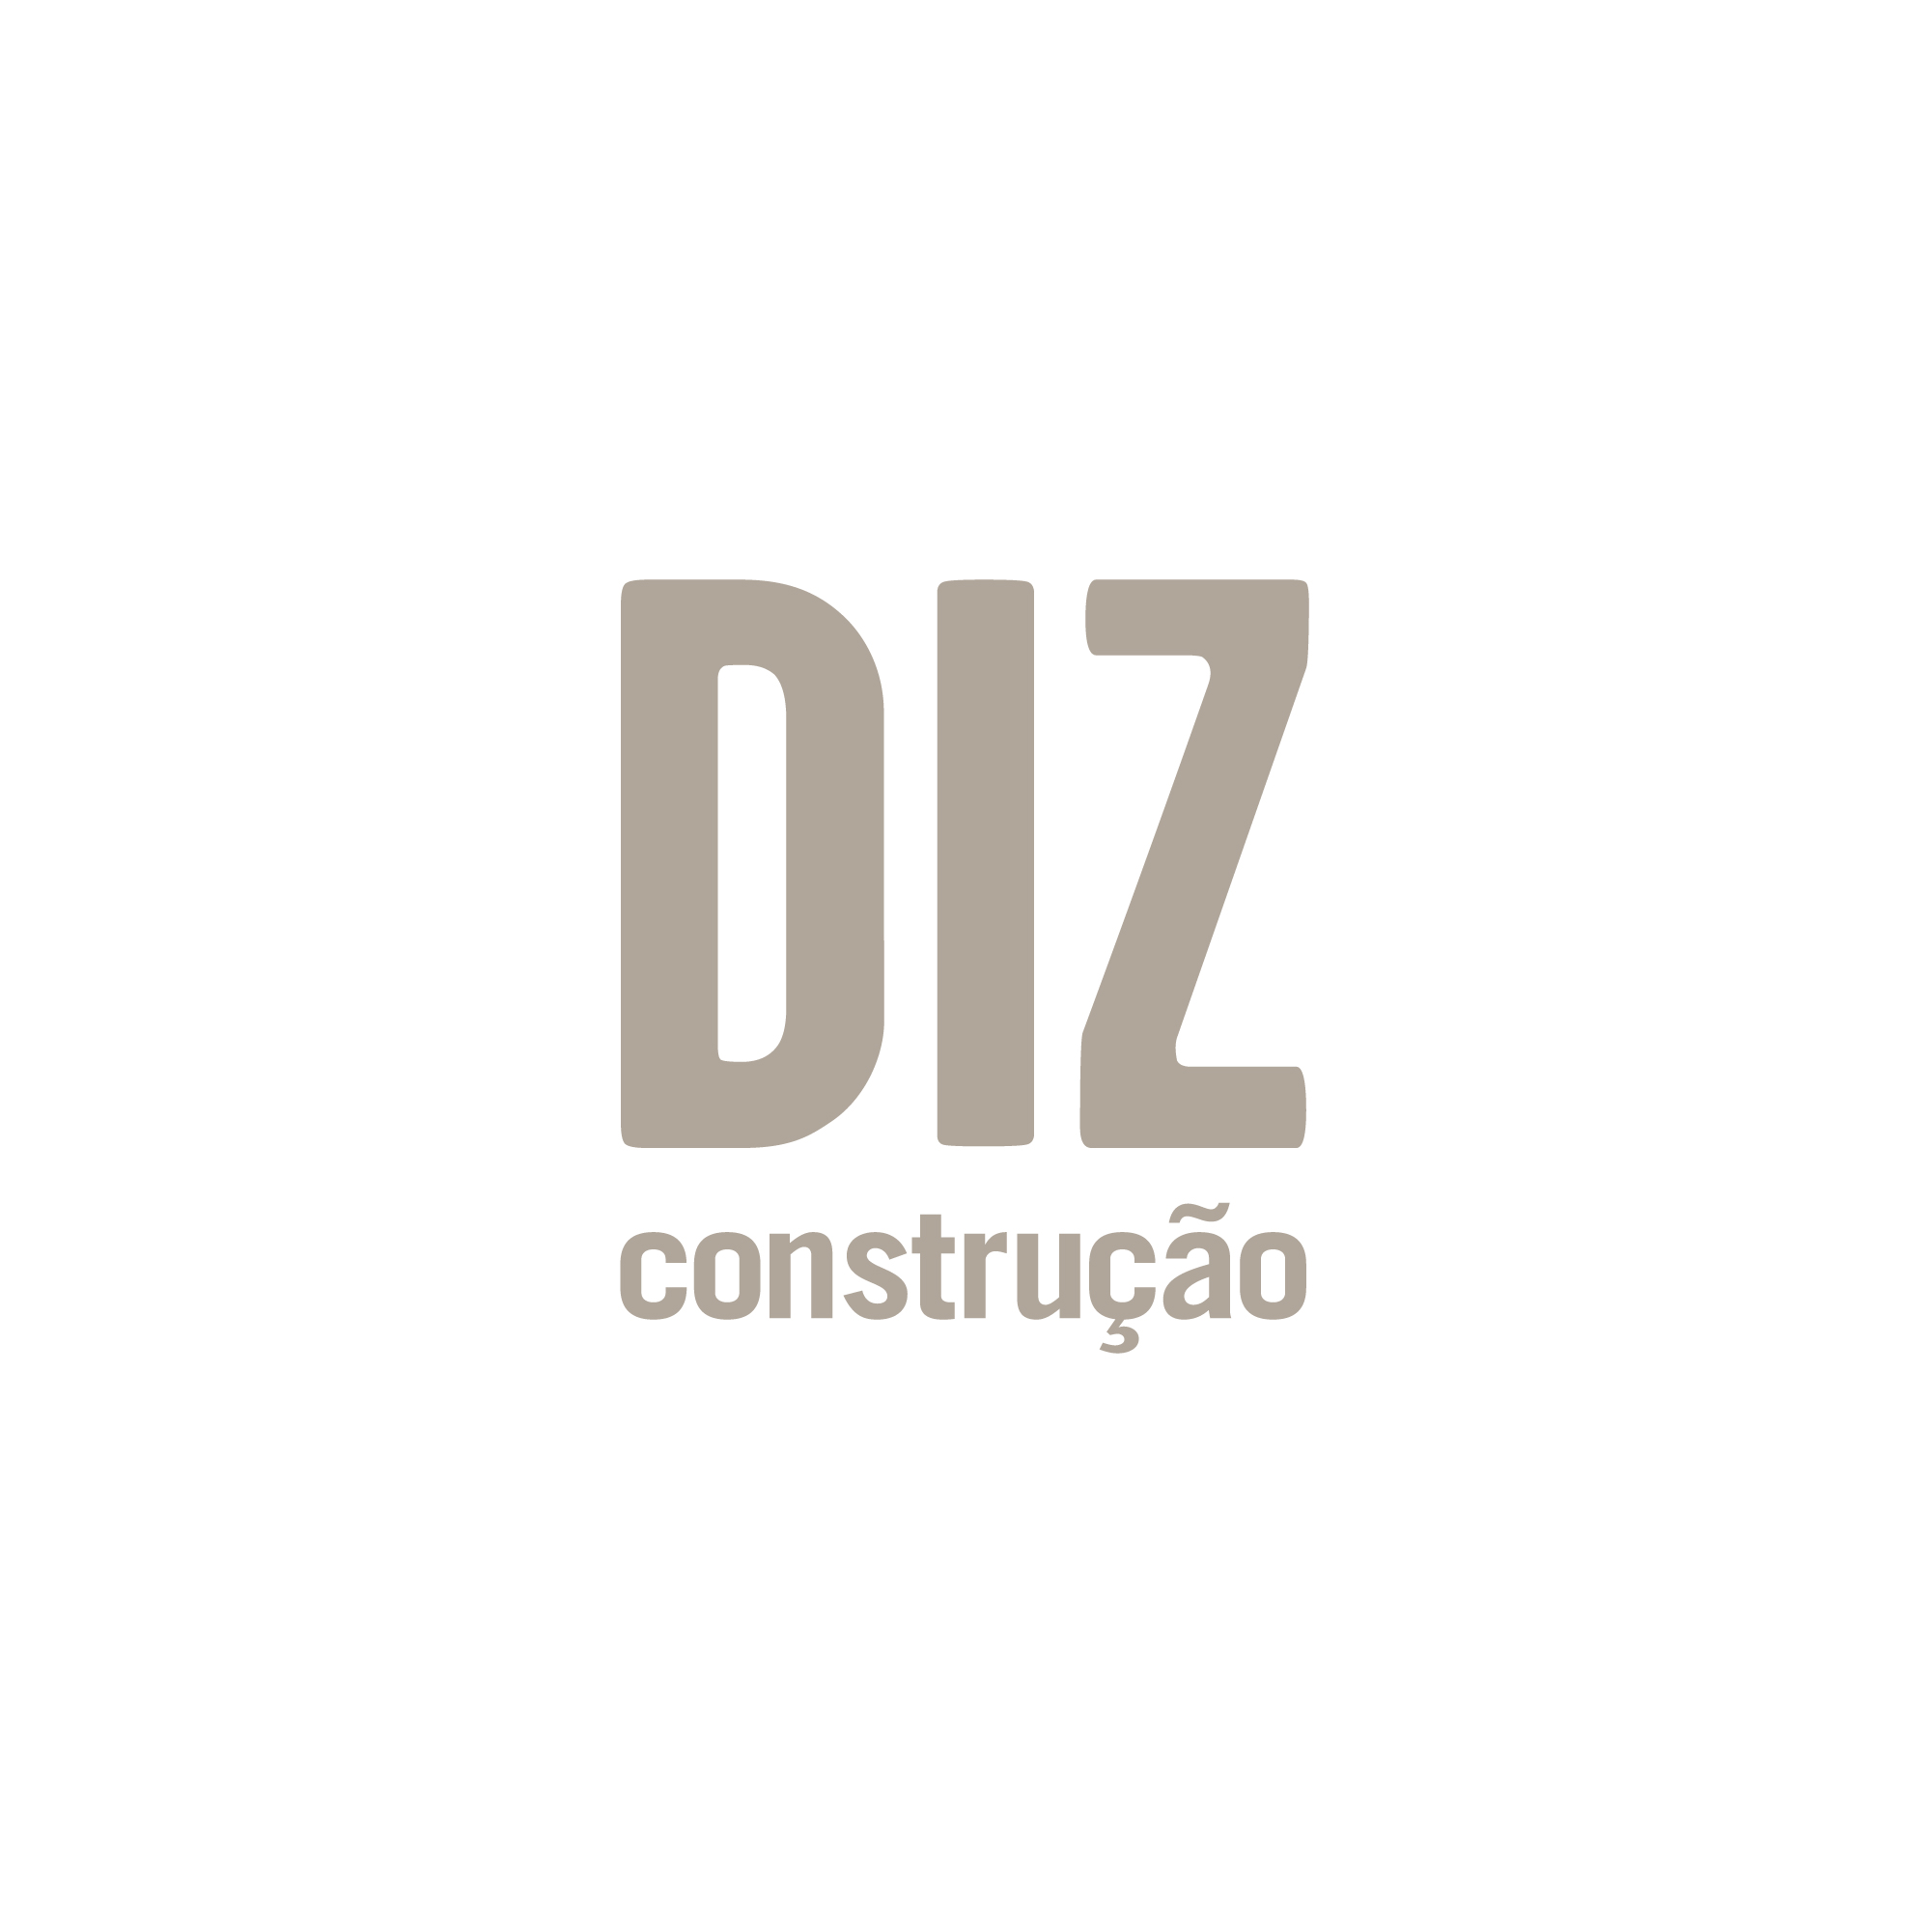 DIZ CONSTRUÇÃO - lettering (2018)